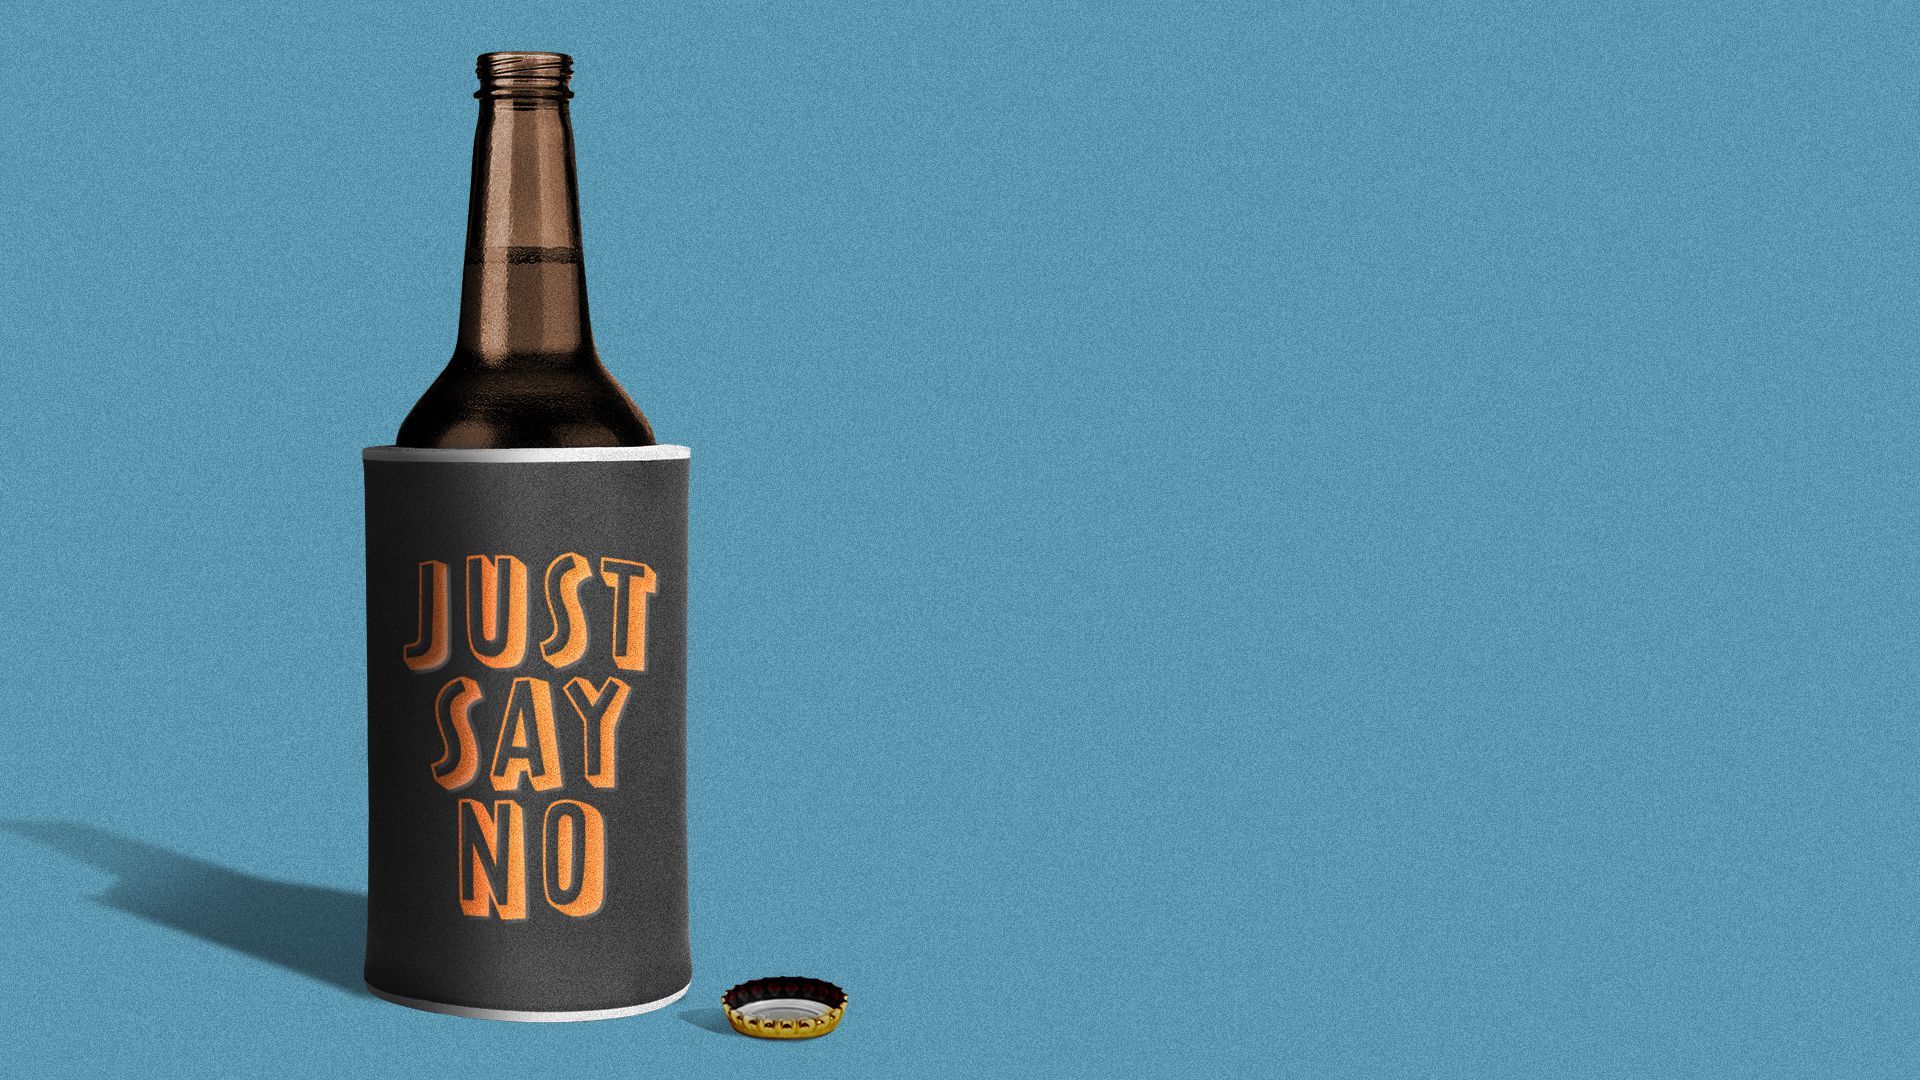 Illustration of a beer bottle inside of a "Just Say No" beer koozie.